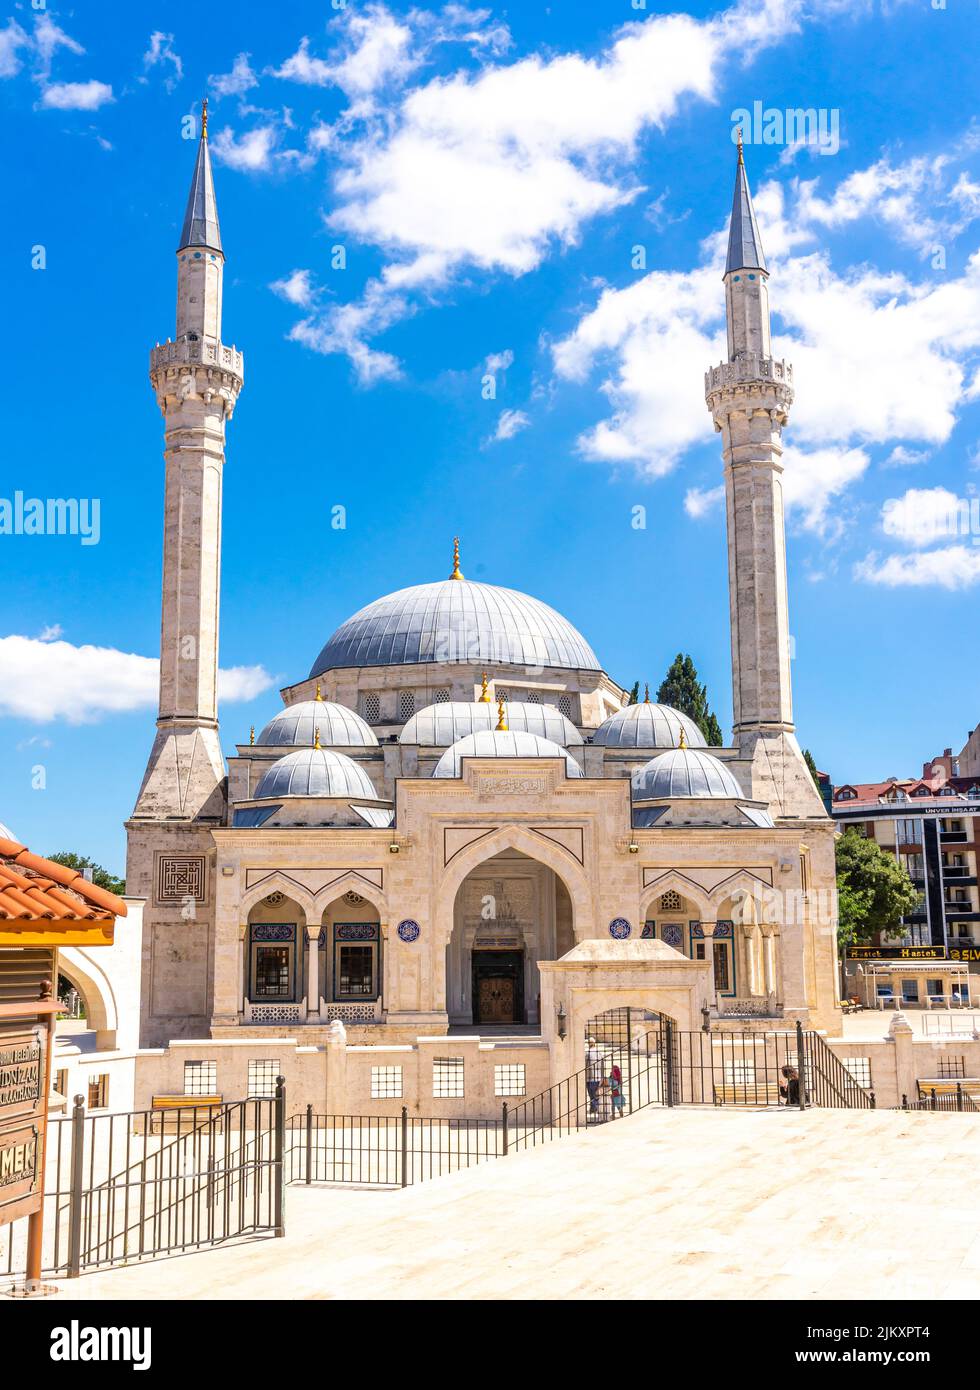 Seyyid Nizâm Câmii ve Türbesi - Mezquita Seyid Nizam en Zeytinburnu, İstanbul, Turquía, terminada en 2011 Foto de stock